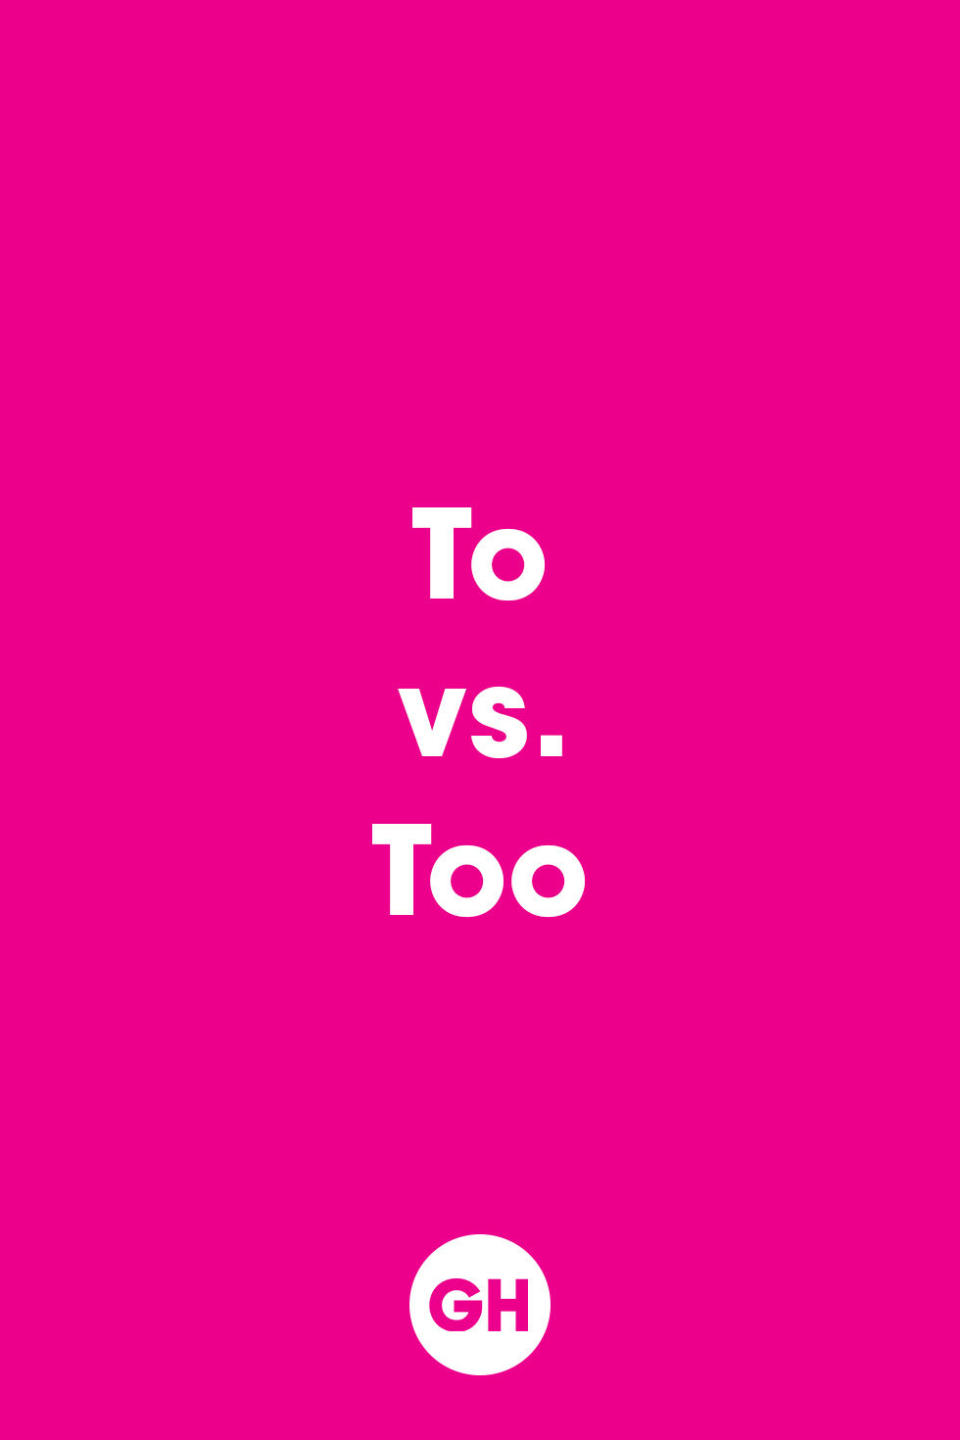 To vs. Too